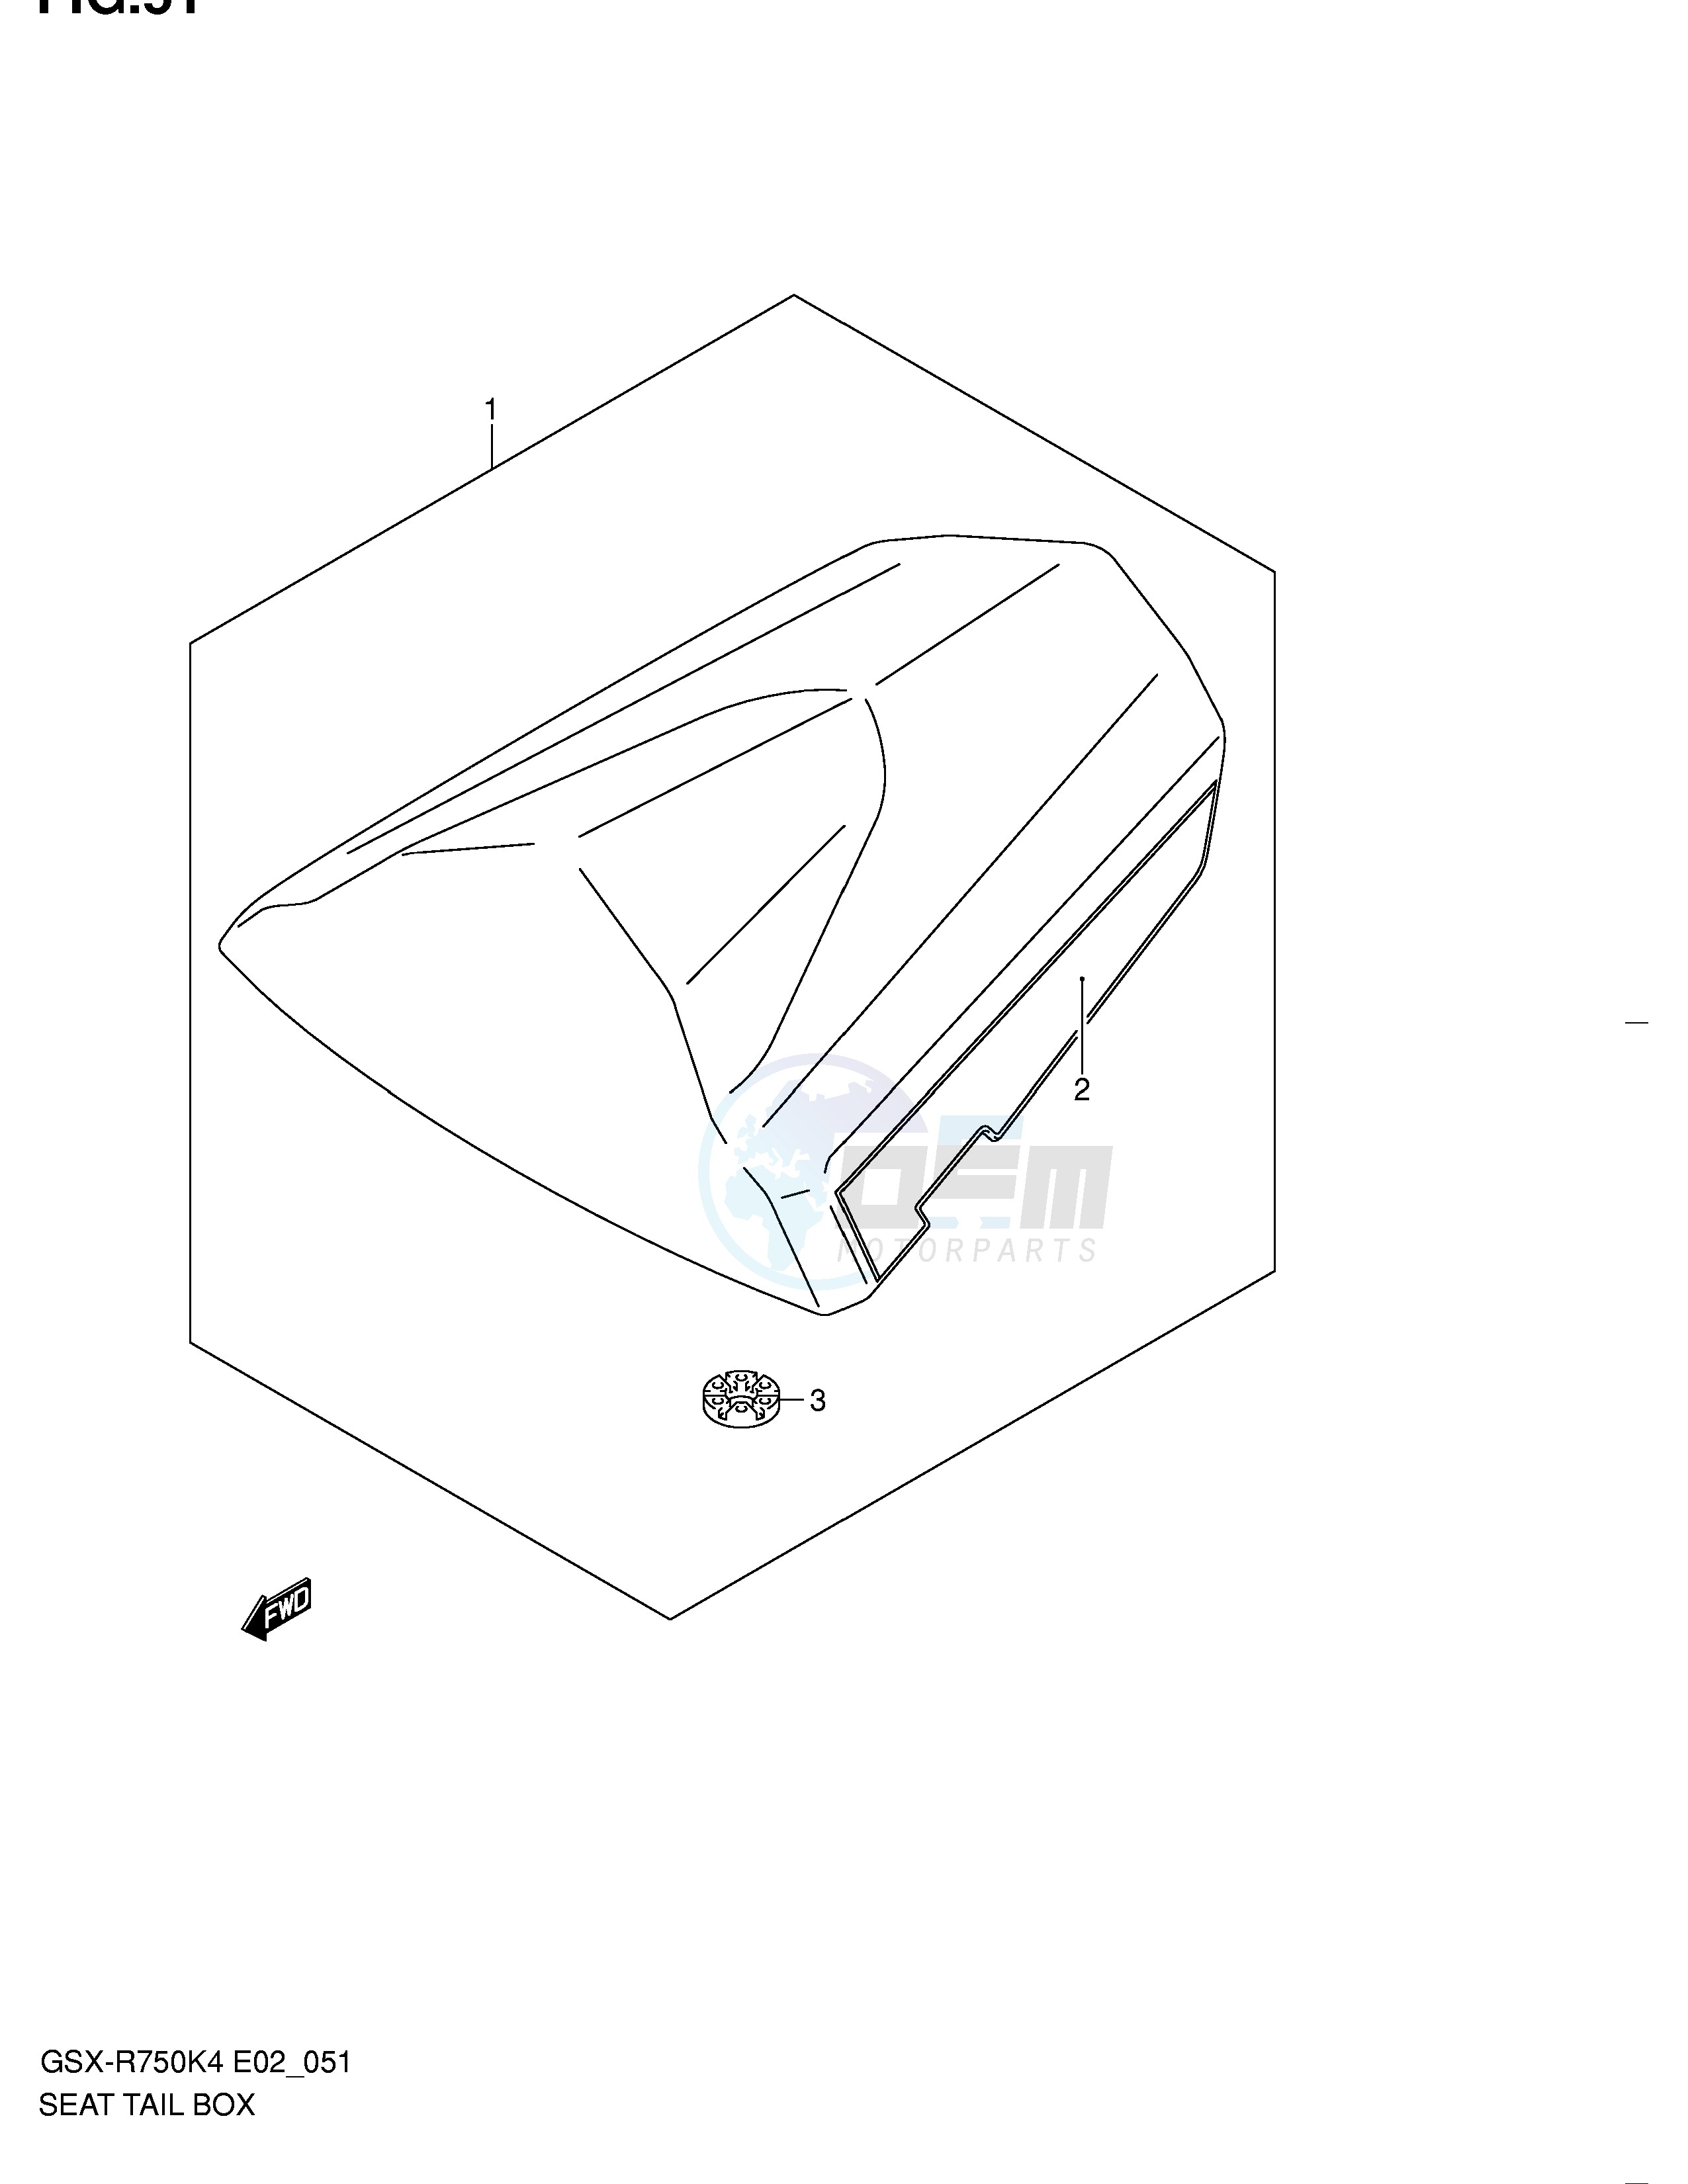 SEAT TAIL BOX (GSX-R750K4 U2K4) blueprint